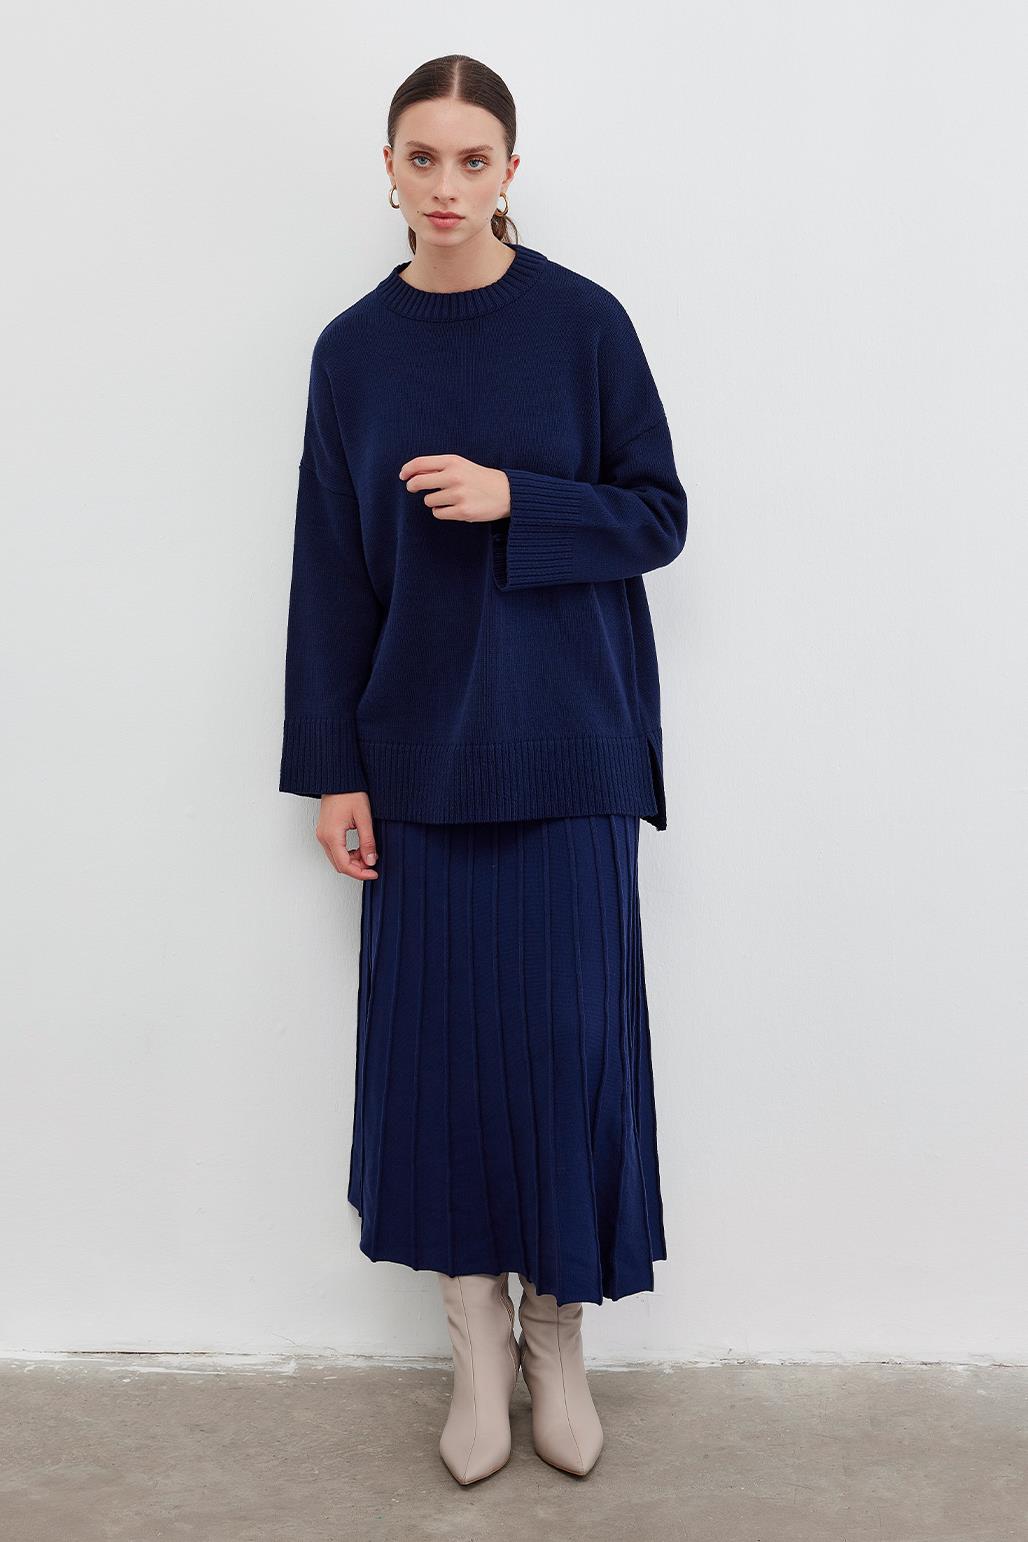 Knitwear Pleated Skirt Navy Blue